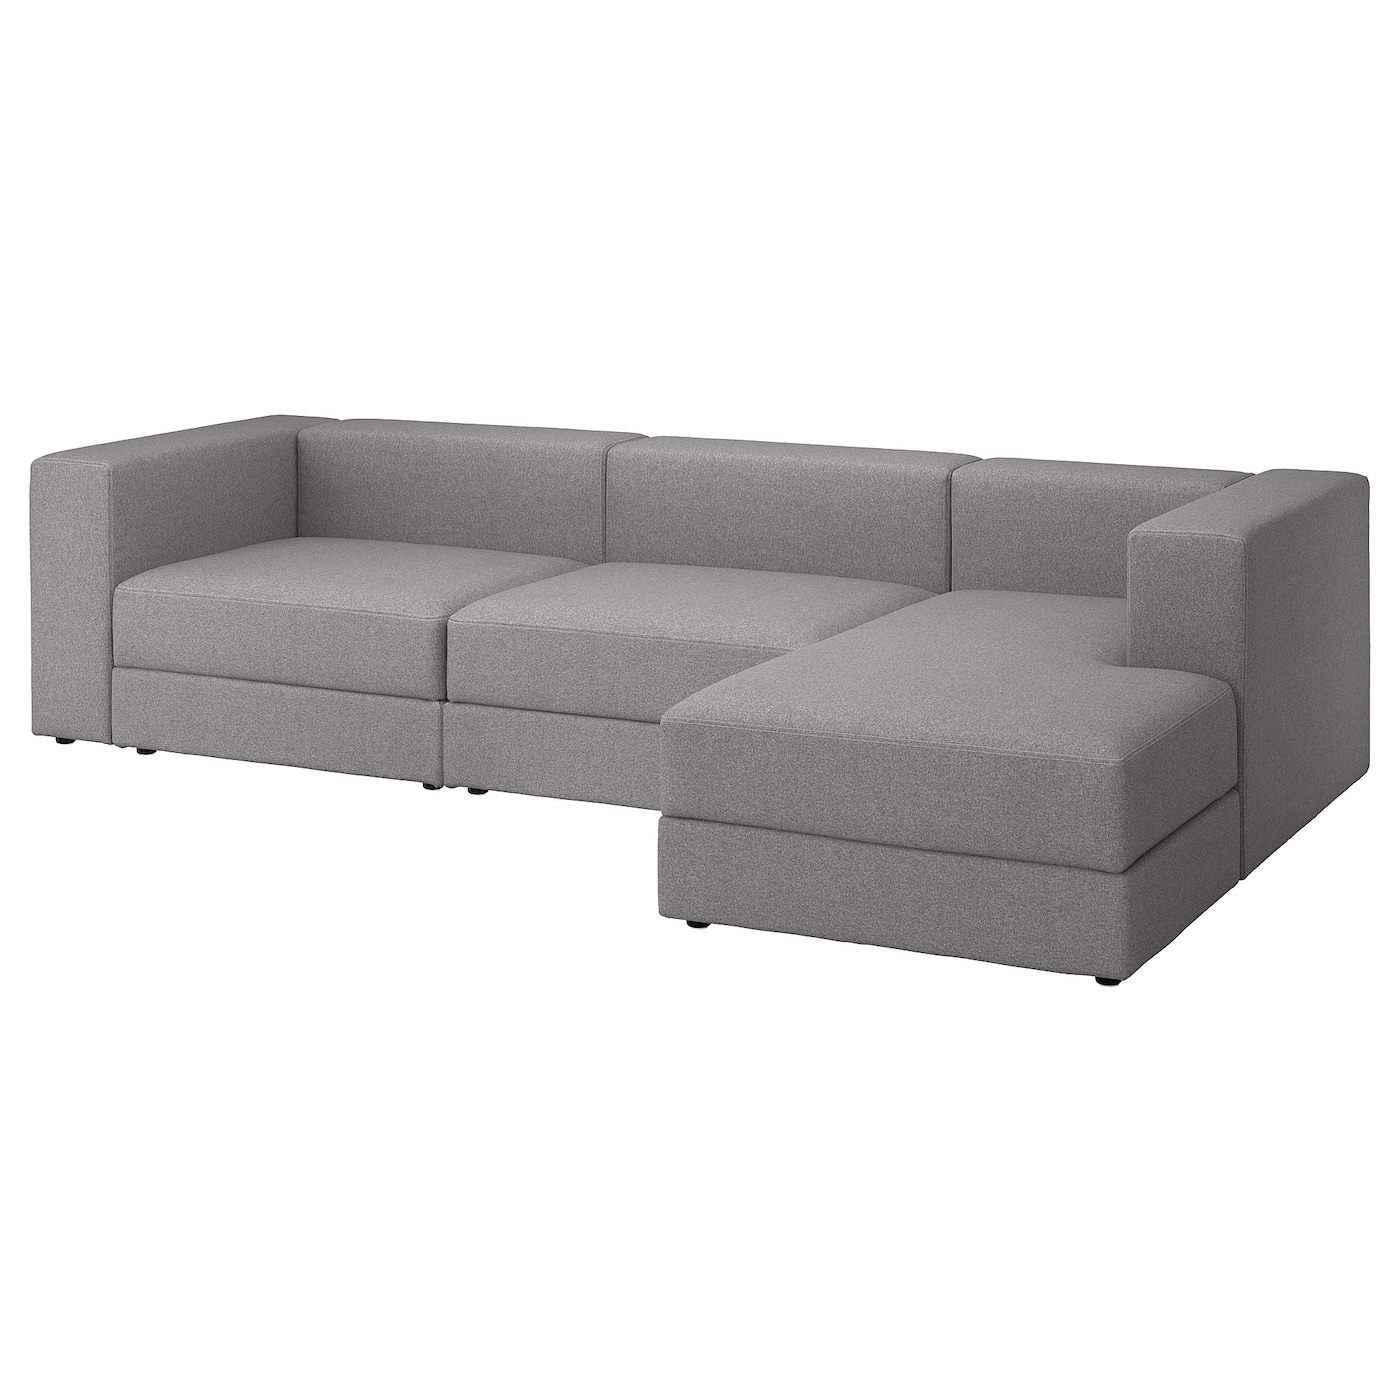 модульный диван ramart design мерсер премиум ultra ivory правый ДЖЭТТЕБО 4-местный диван + диван, правый/Тонеруд серый JÄTTEBO IKEA